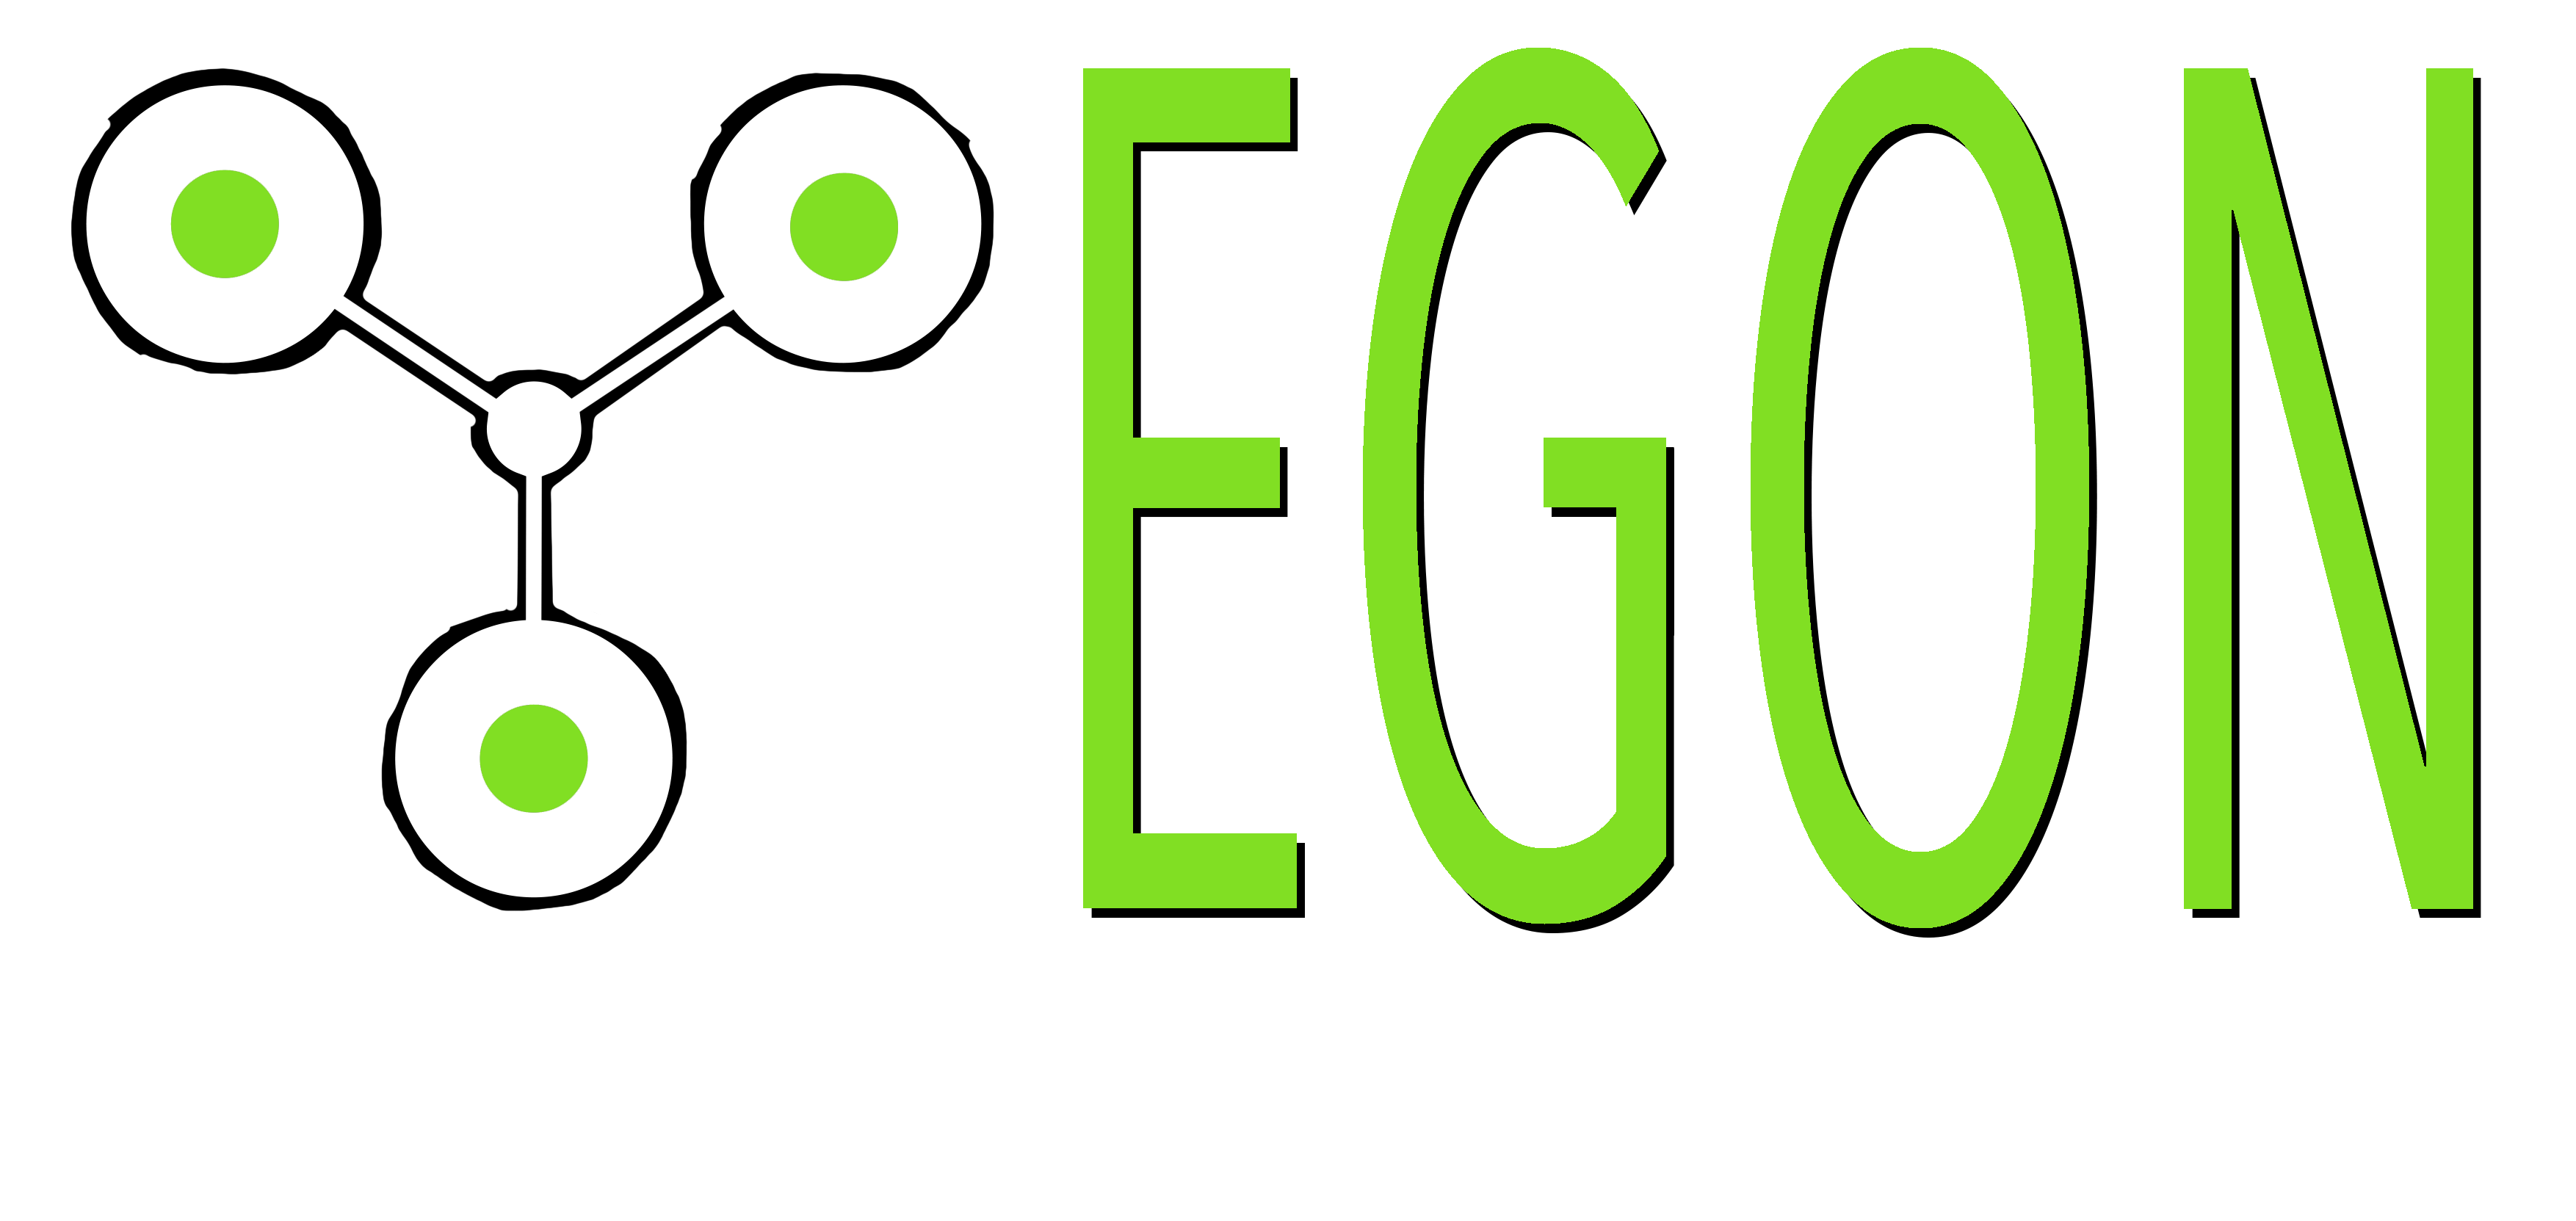 EGON Logo Game changing simplicity